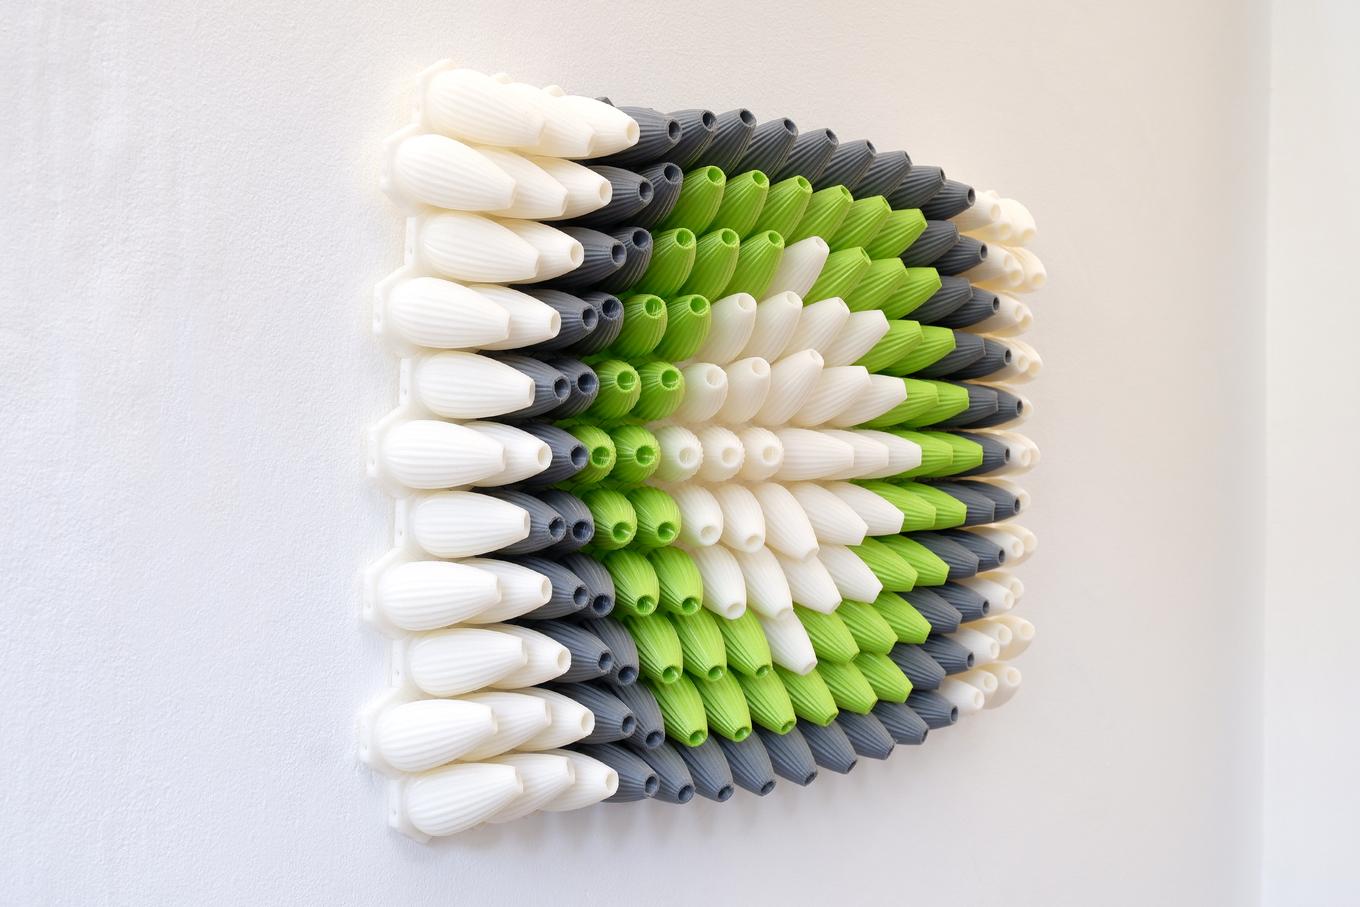 Orifices | Herschel Shapiro | Abstract 3D Wall Art